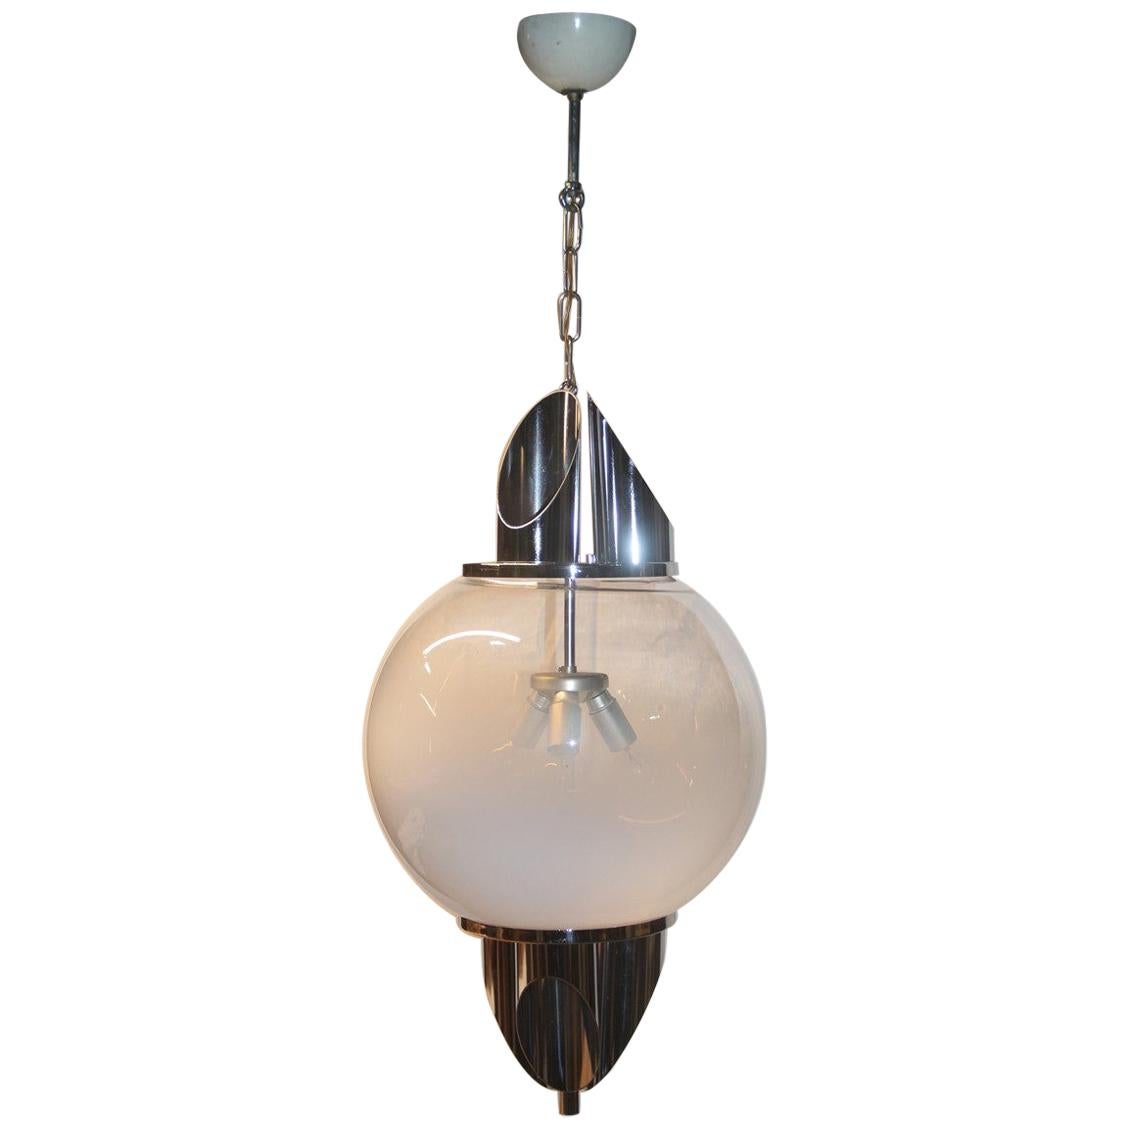 Ceiling Lamp Ball Murano Glass Selenova Italian Design Chrome Silver White For Sale